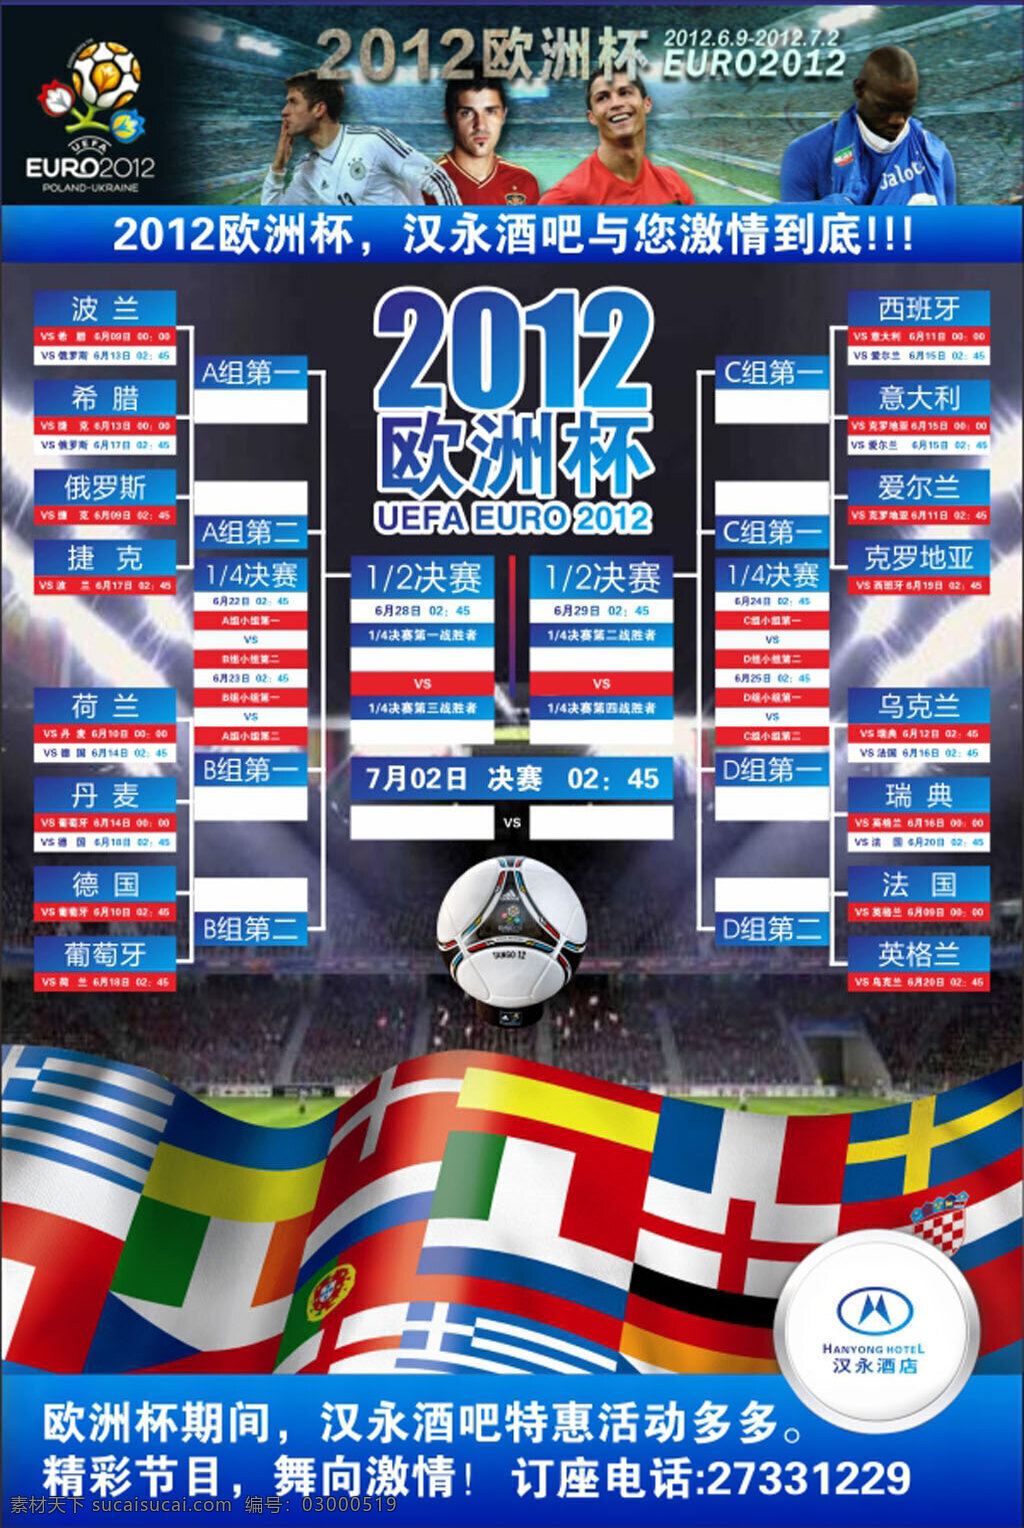 欧洲杯时间表 欧洲杯 时间表 排位 进程 国旗 海报 广告 宣传 单张 蓝色